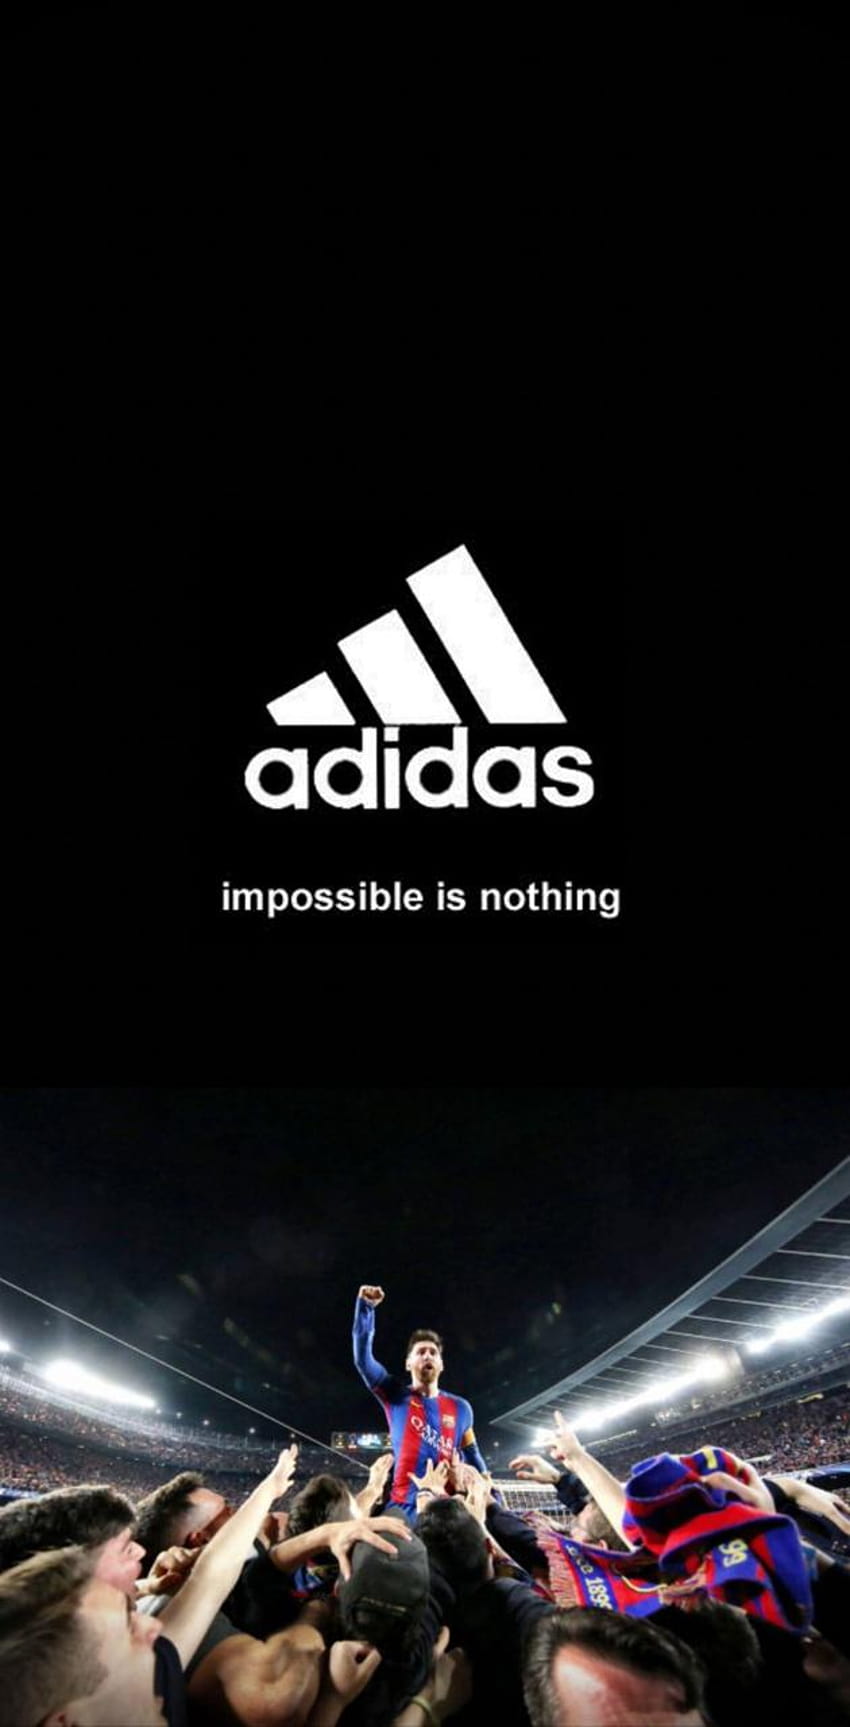 Adidas by ChickenFriedJesus、不可能などない HD電話の壁紙